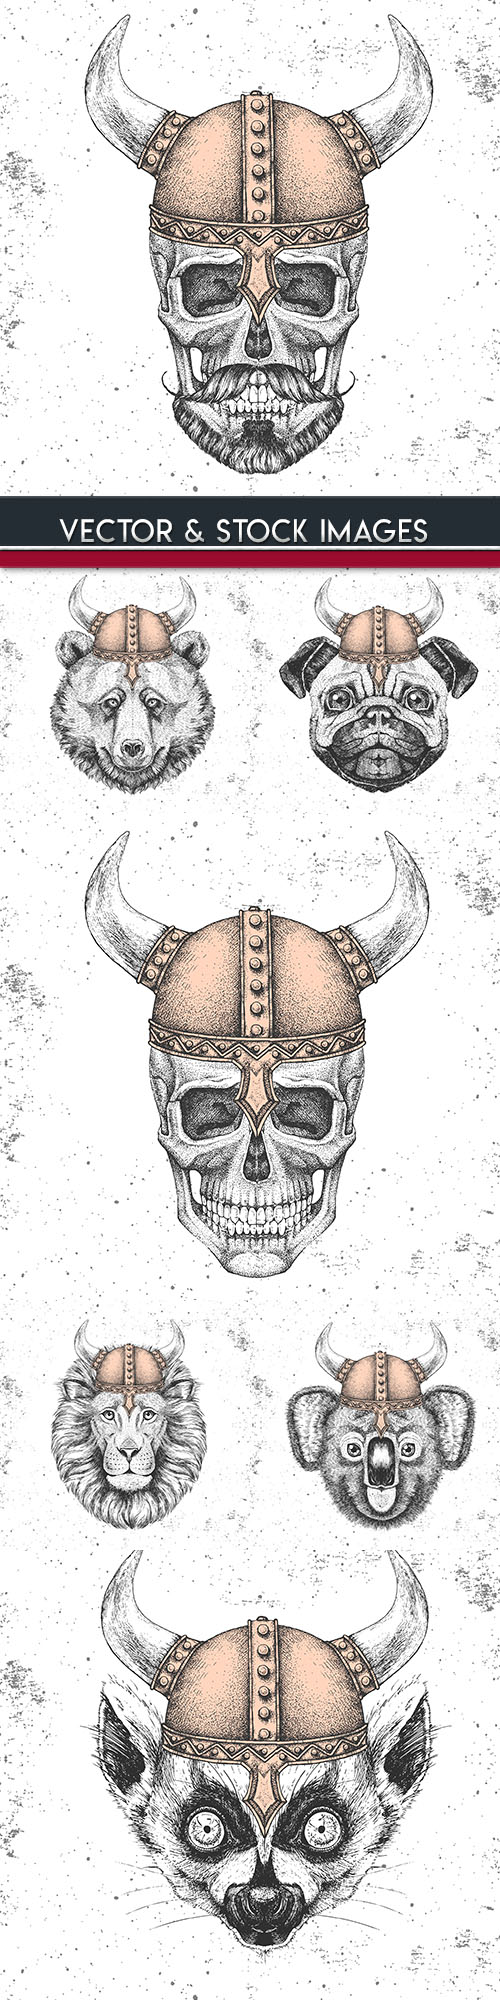 Head animal and skull in Viking grunge helmet drawing